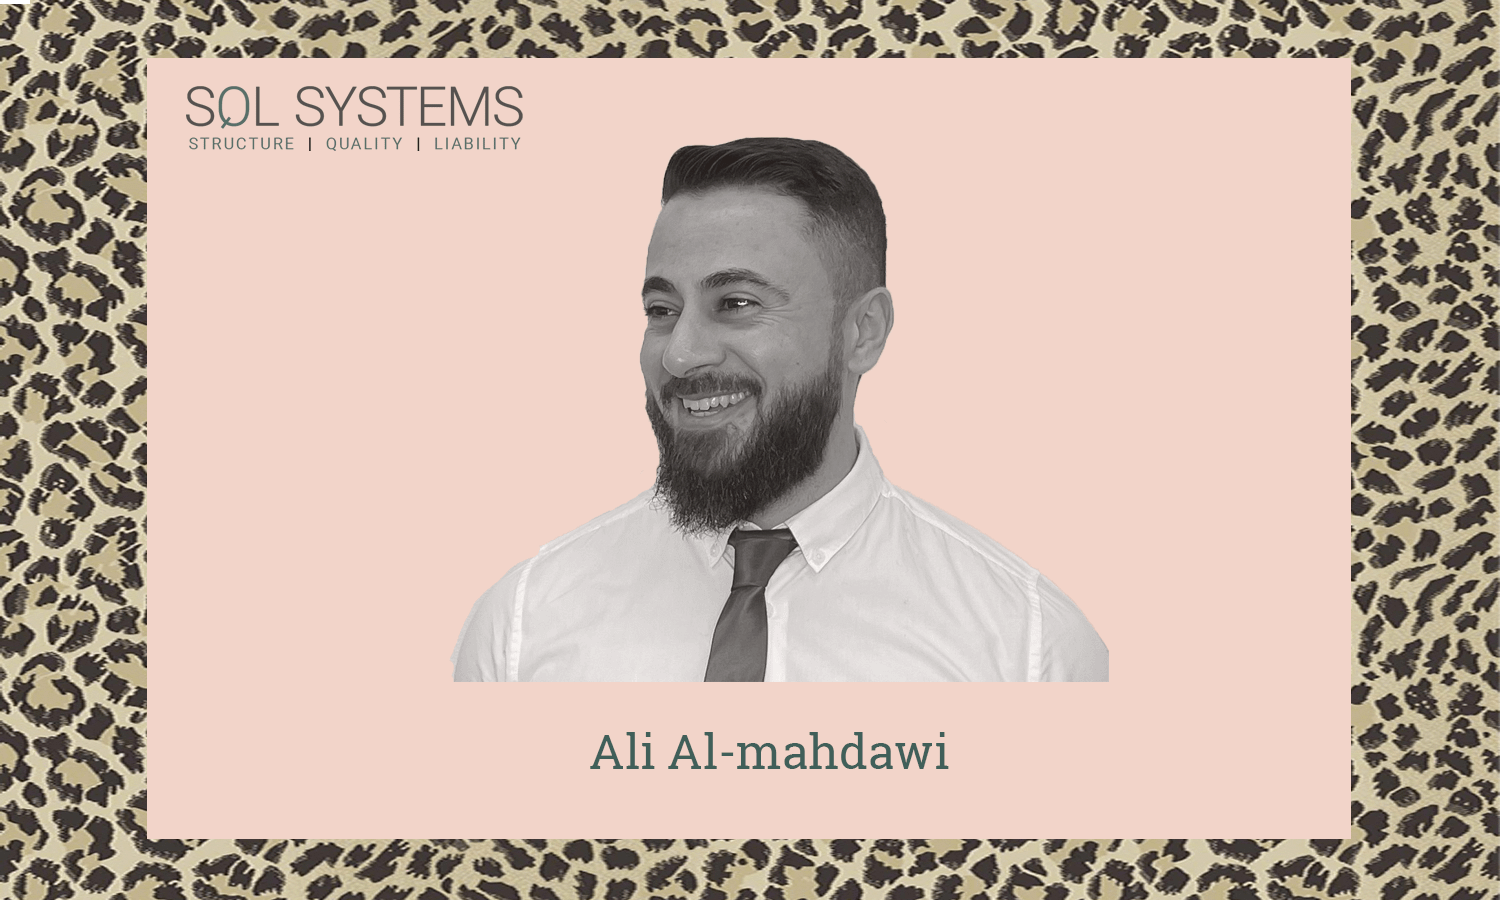 Ali_Al-mahdawi_SQL_Systems-1